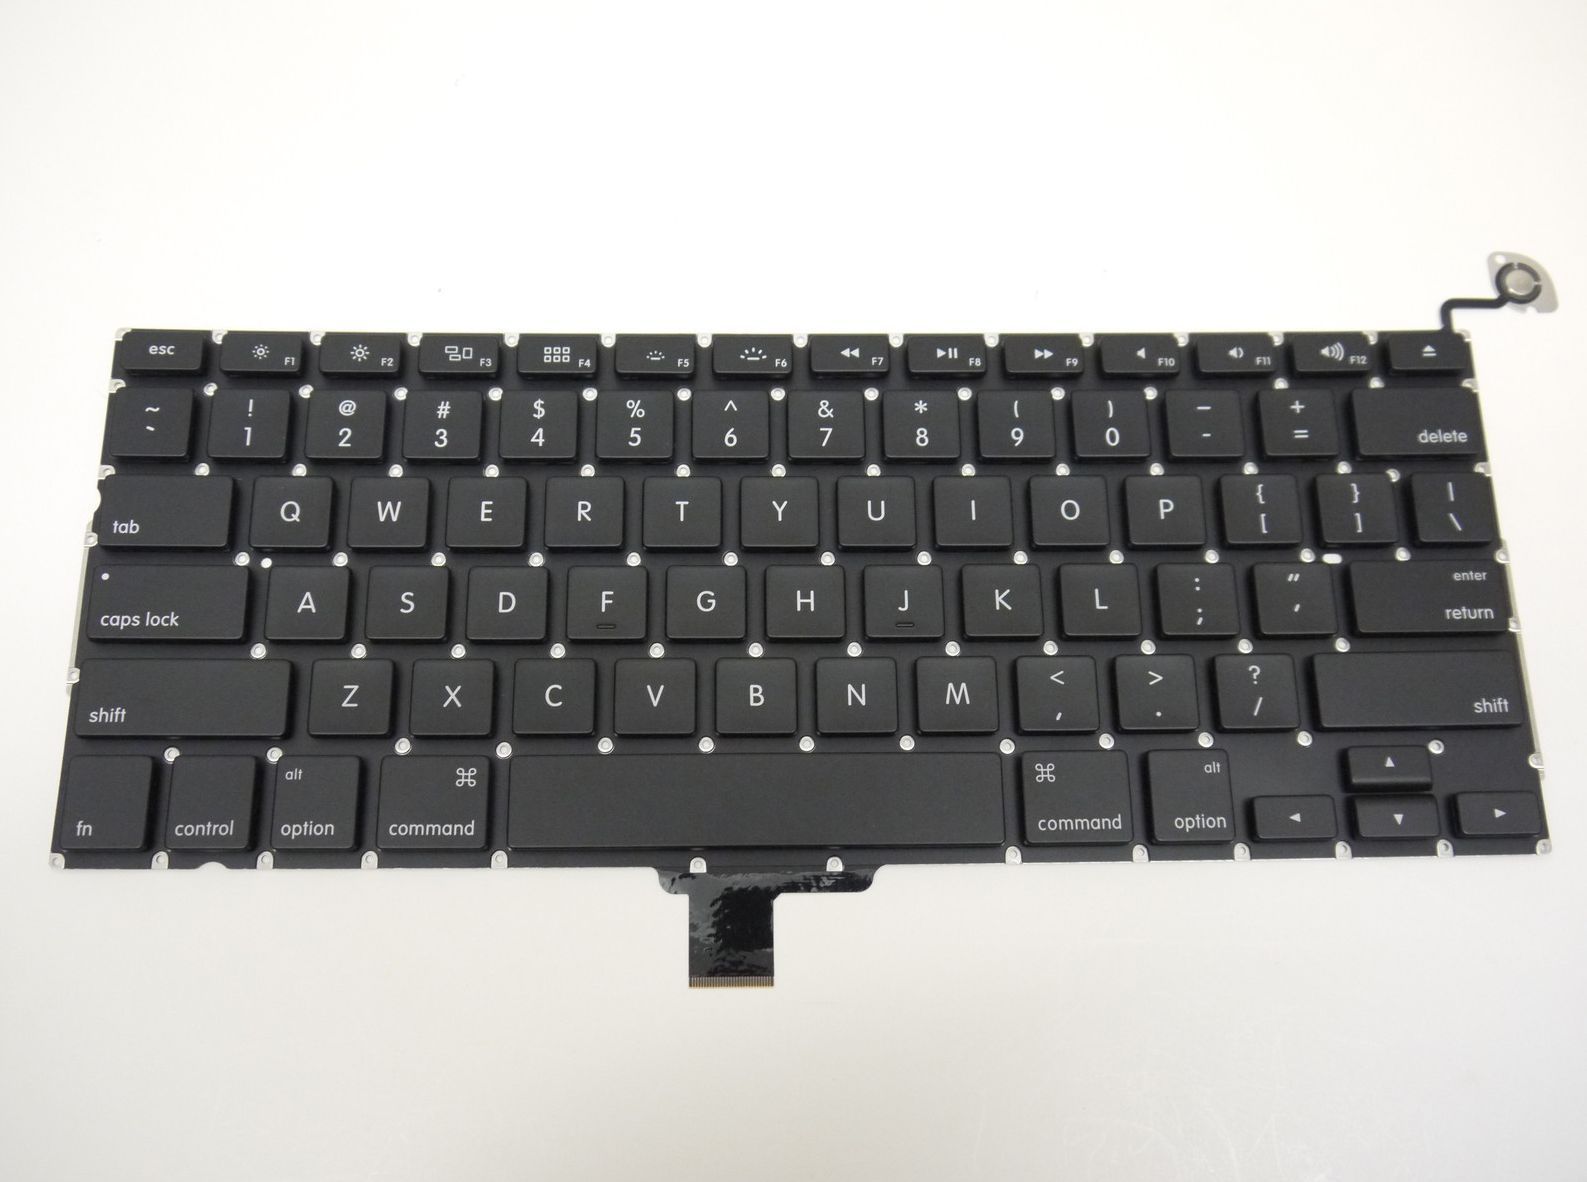 Bàn Phím - Keyboard Laptop Macbook A1278